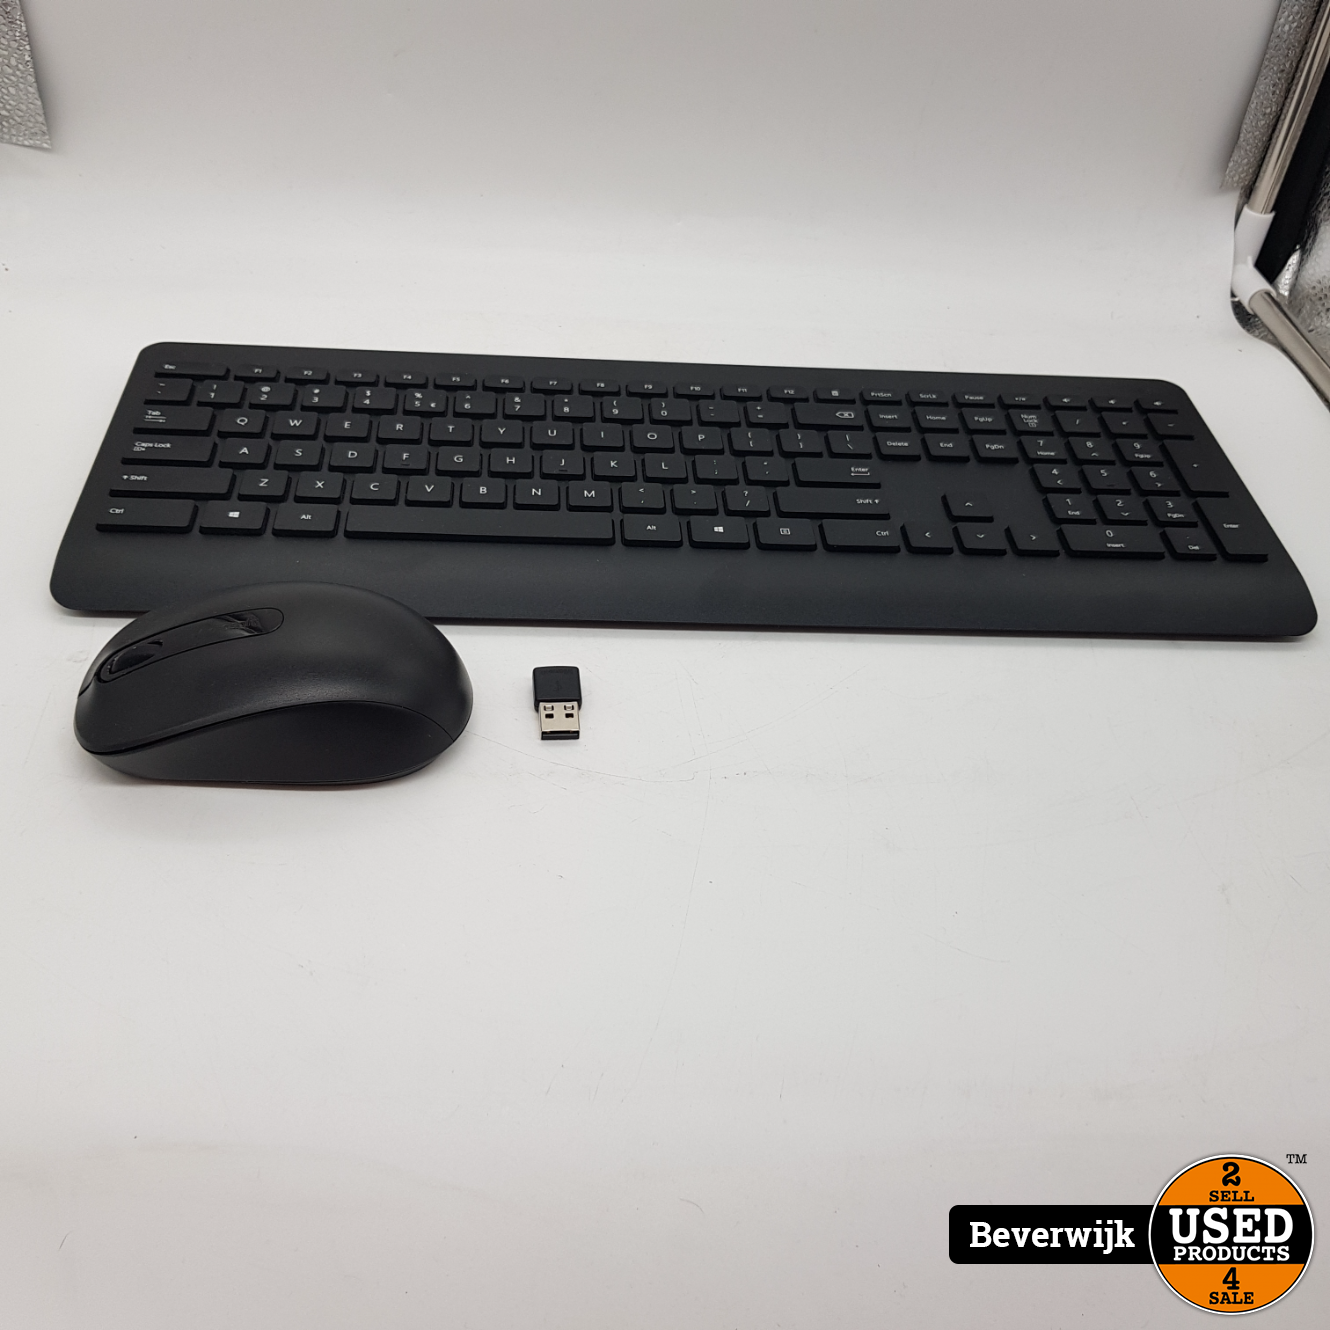 Afhankelijk Fondsen Minnaar Microsoft Draadloos toetsenbord met muis - In Nette Staat - Used Products  Beverwijk